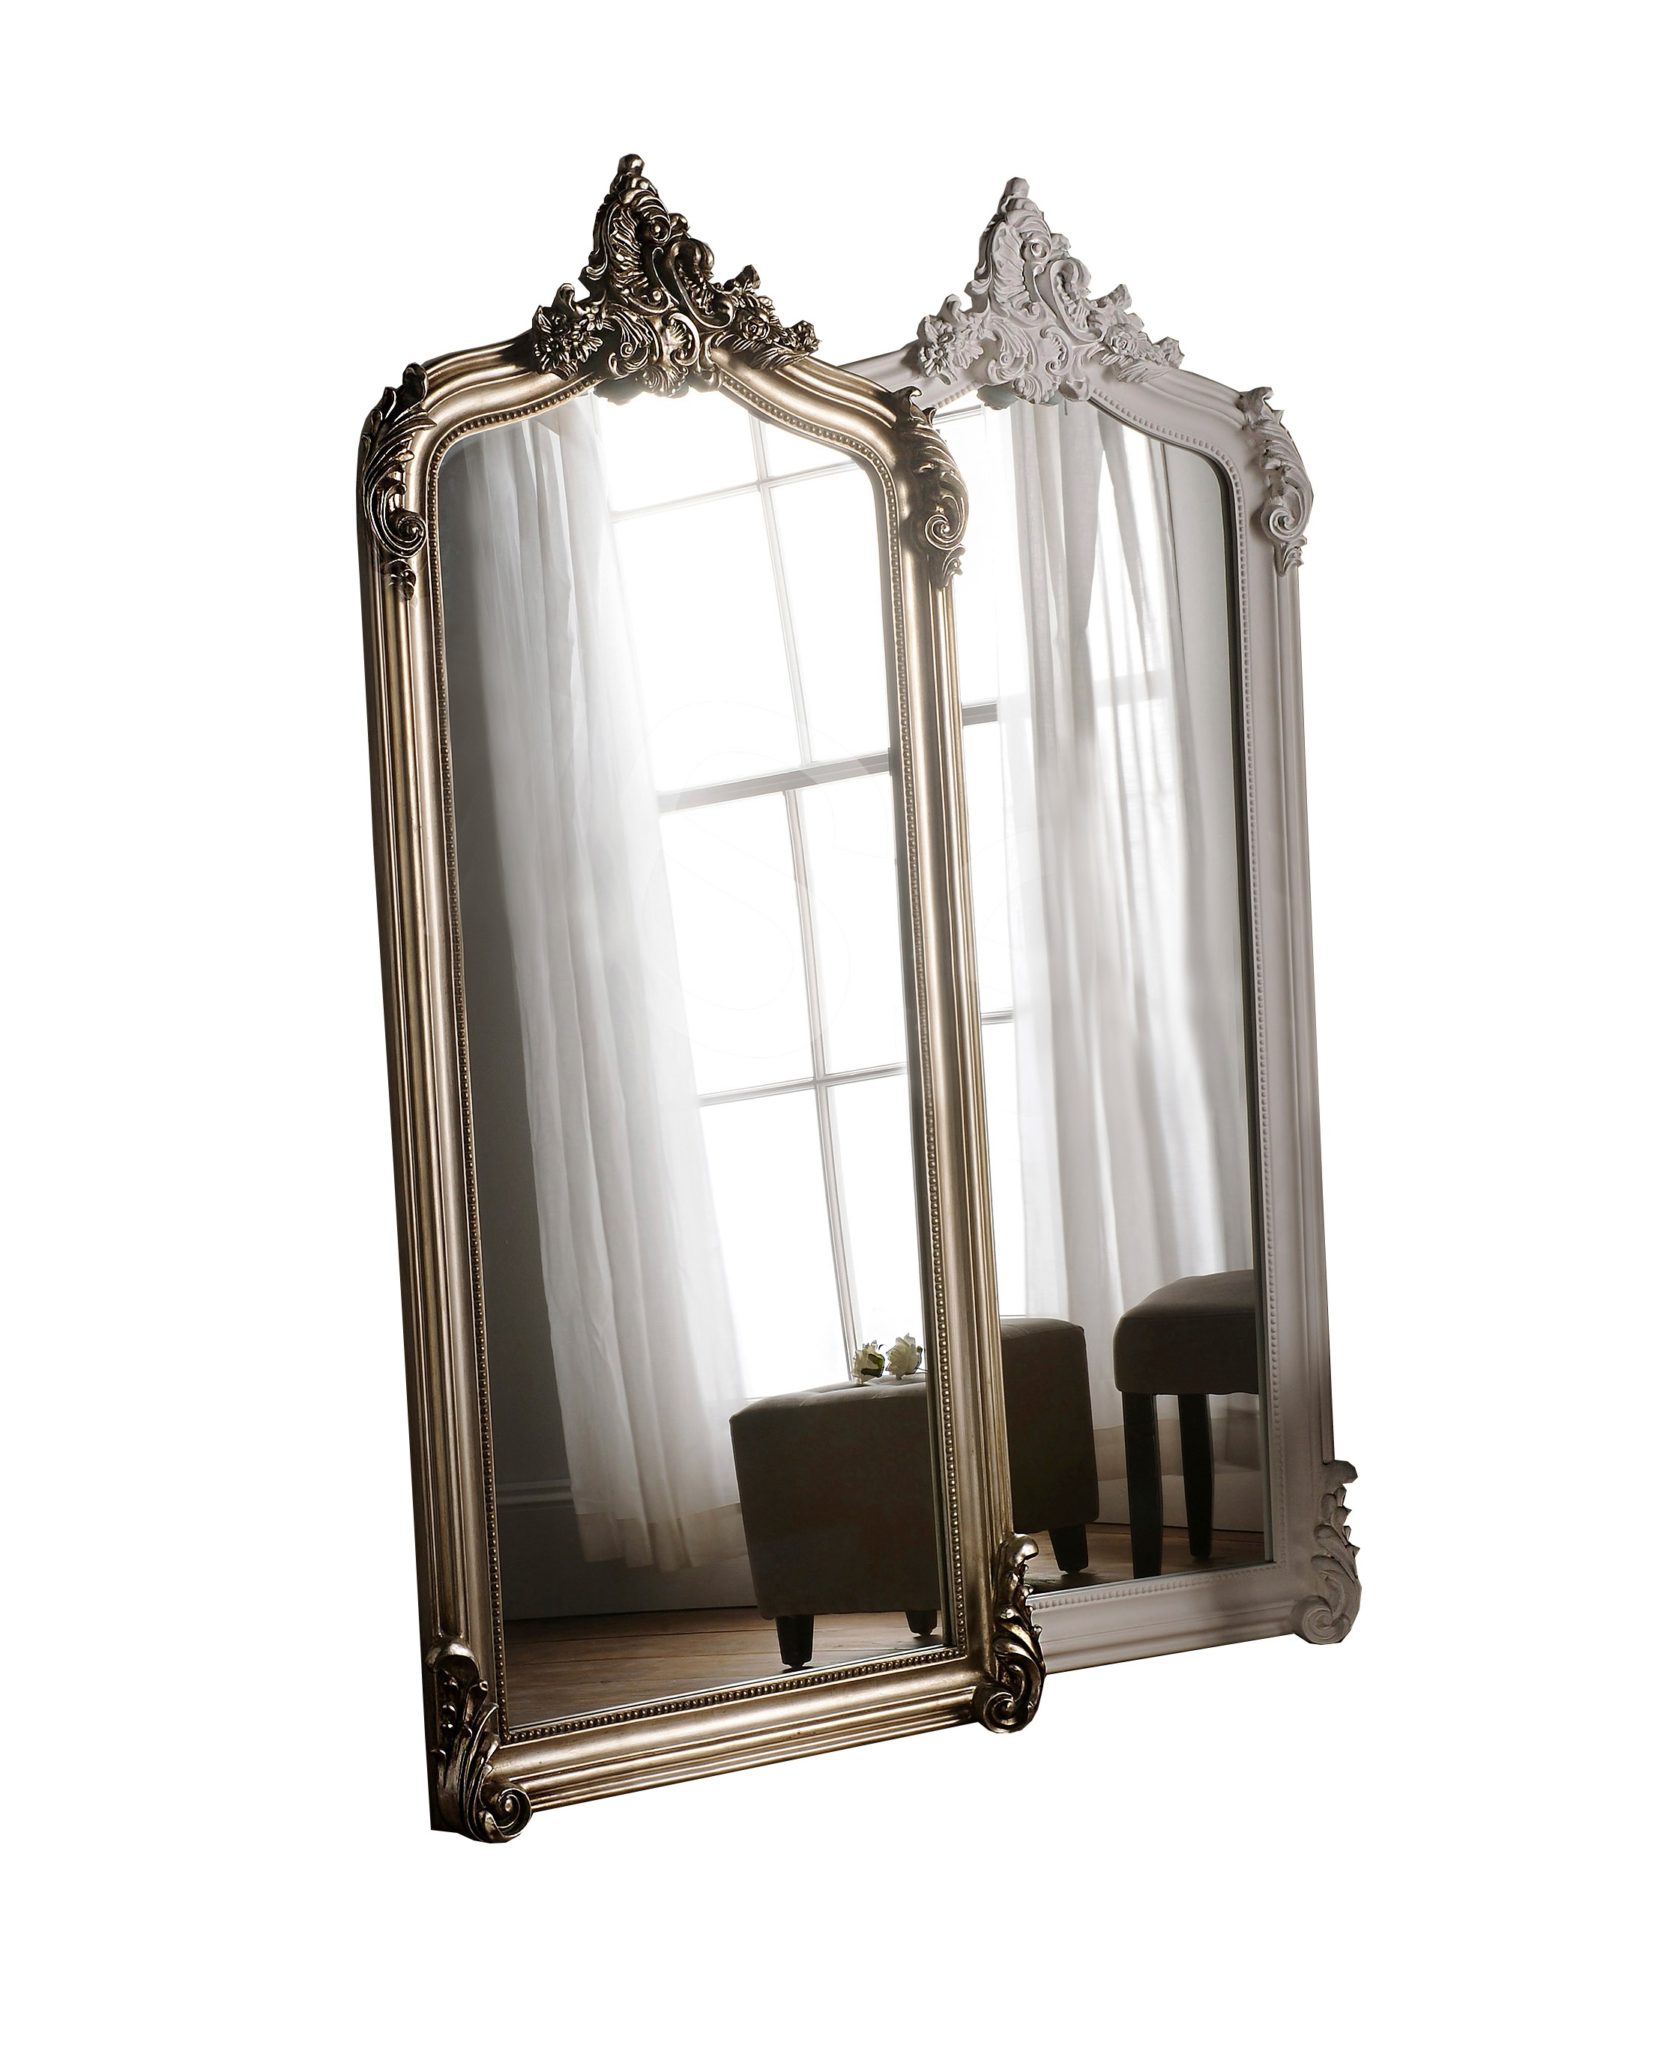 Nicoli Ornate Swept Framed Full Length, Palazzo Gold Ornate Full Length Mirror 73 X 41